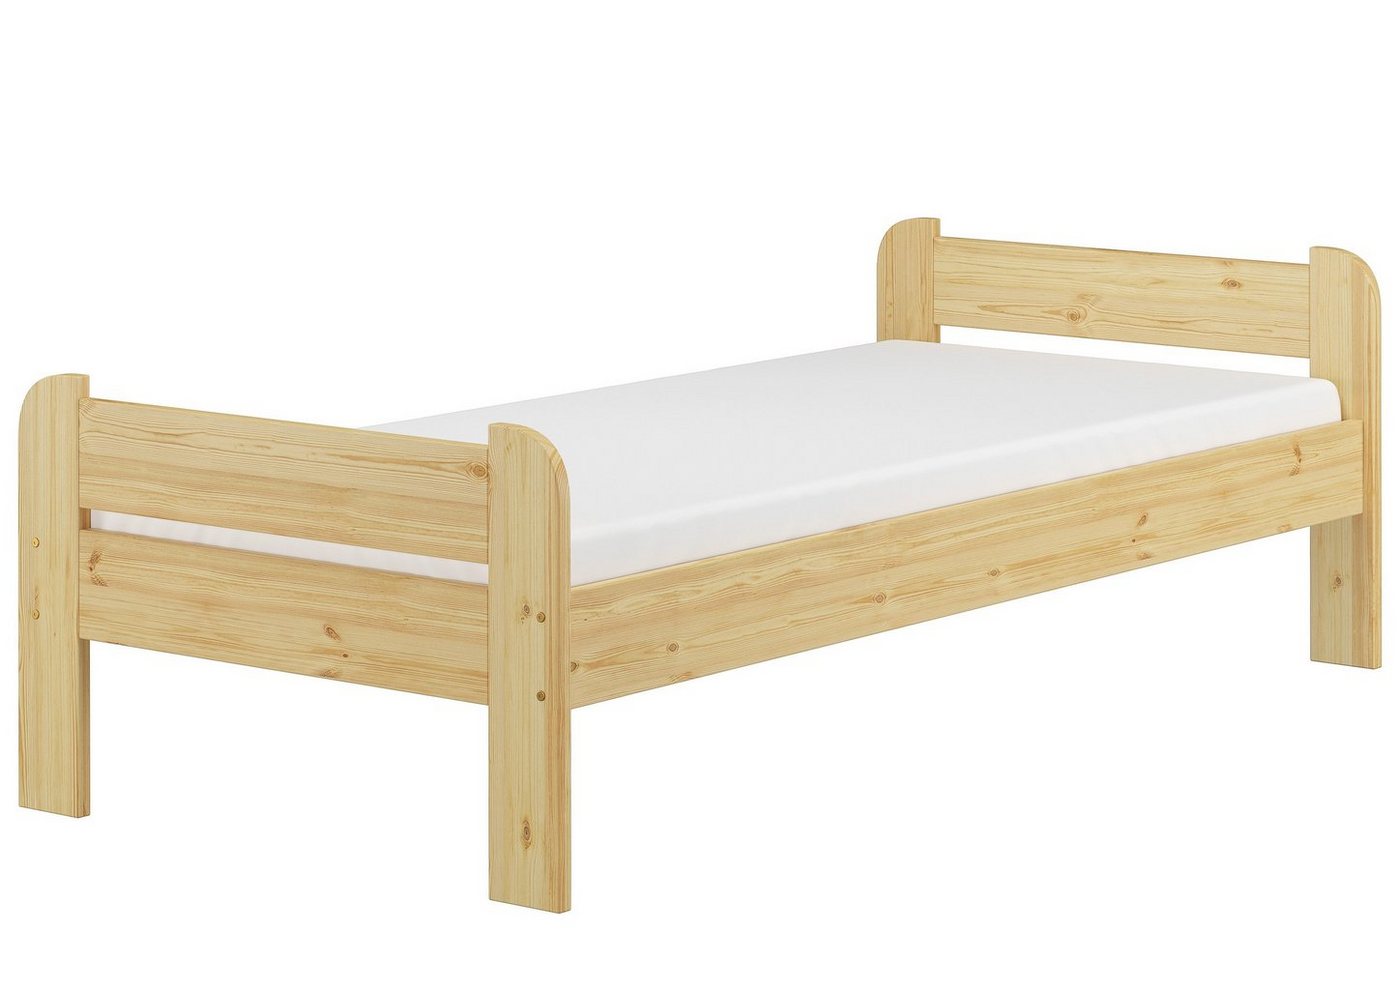 ERST-HOLZ Bett Einzelbett mit Kopf- und Fußteil inkl. Rollrost und Matratze, Kieferfarblos lackiert von ERST-HOLZ